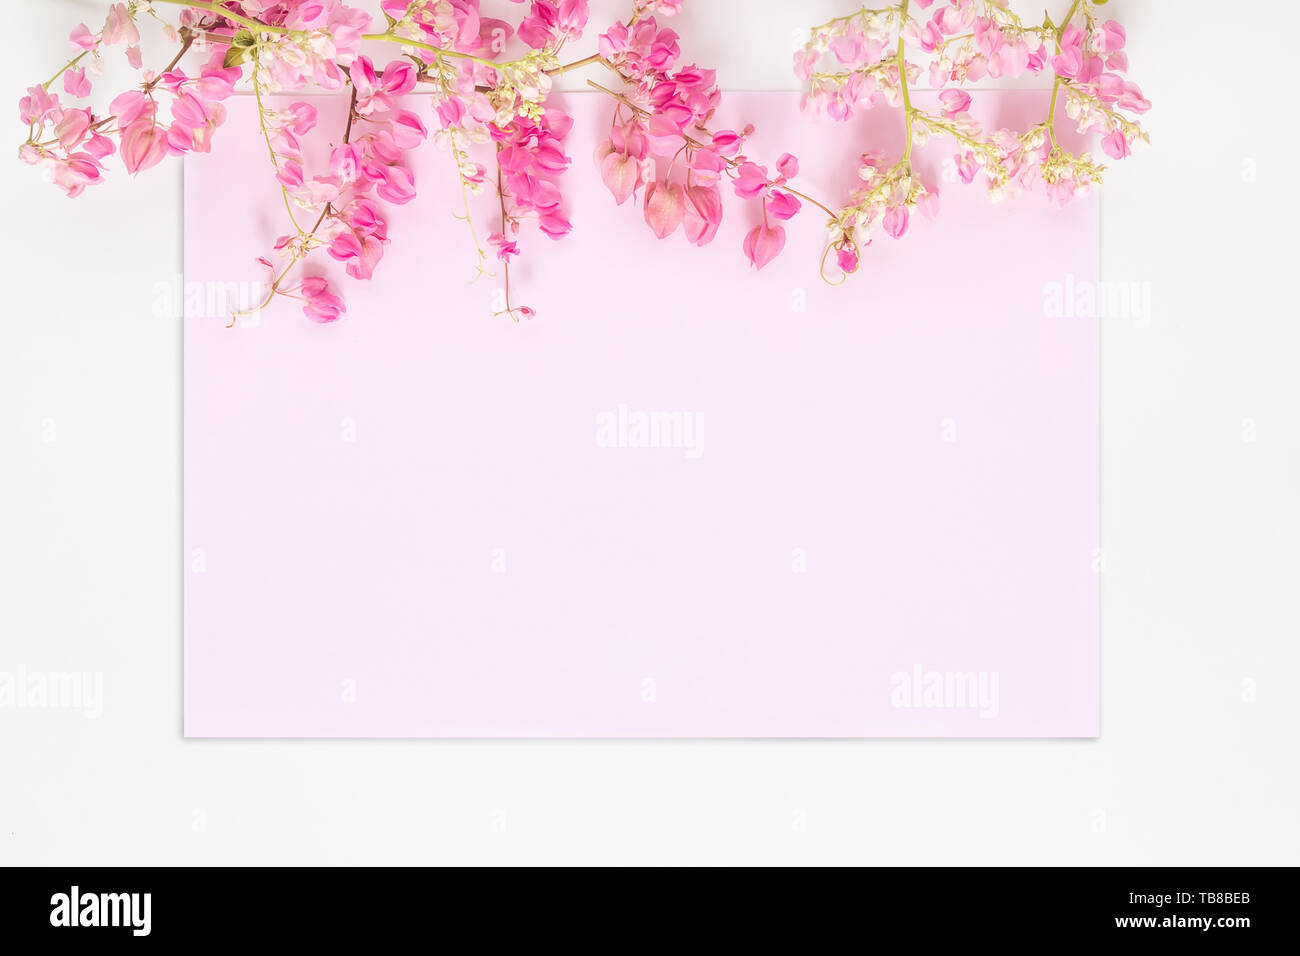 Mise à plat des fleurs rose pastel rose sur carte d'invitation isolé sur fond blanc. Le concept d'invitation floral Banque D'Images